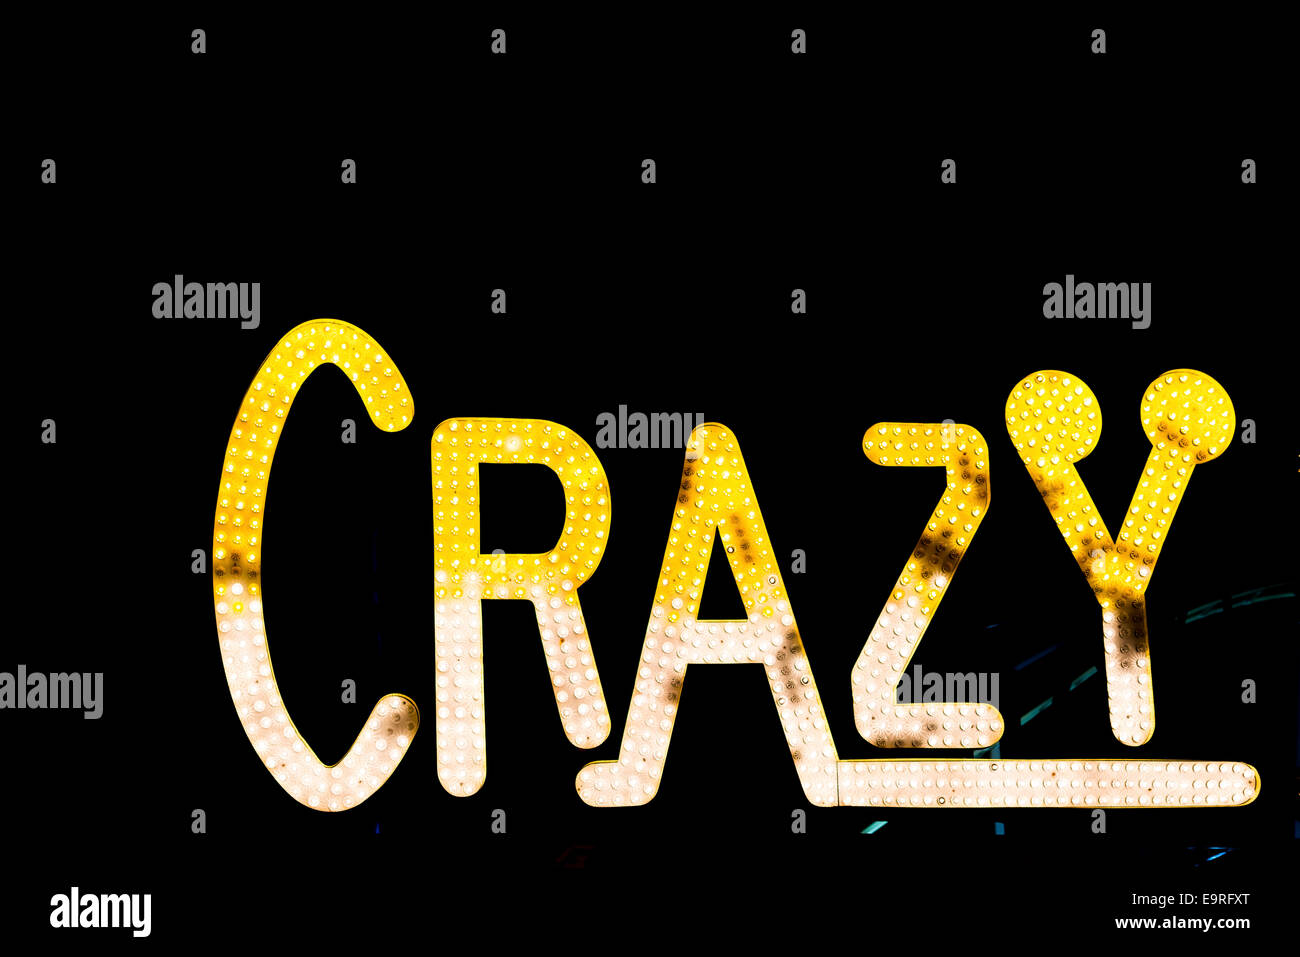 "Crazy" beleuchtet Zeichen nachts, mit gelben und weißen Glühbirnen Stockfoto